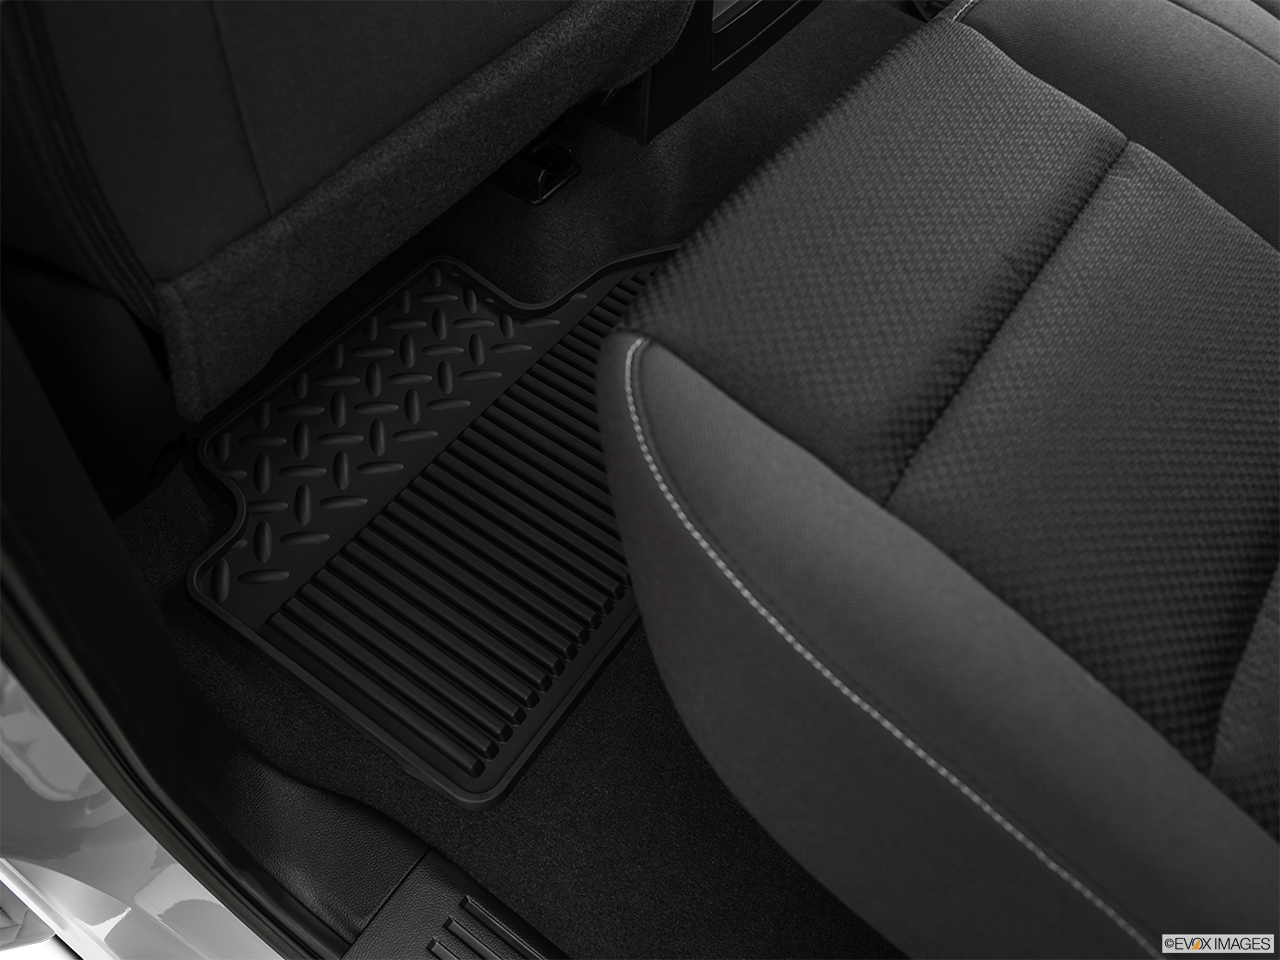 2019 GMC Sierra 2500HD SLE Rear driver's side floor mat. Mid-seat level from outside looking in. 